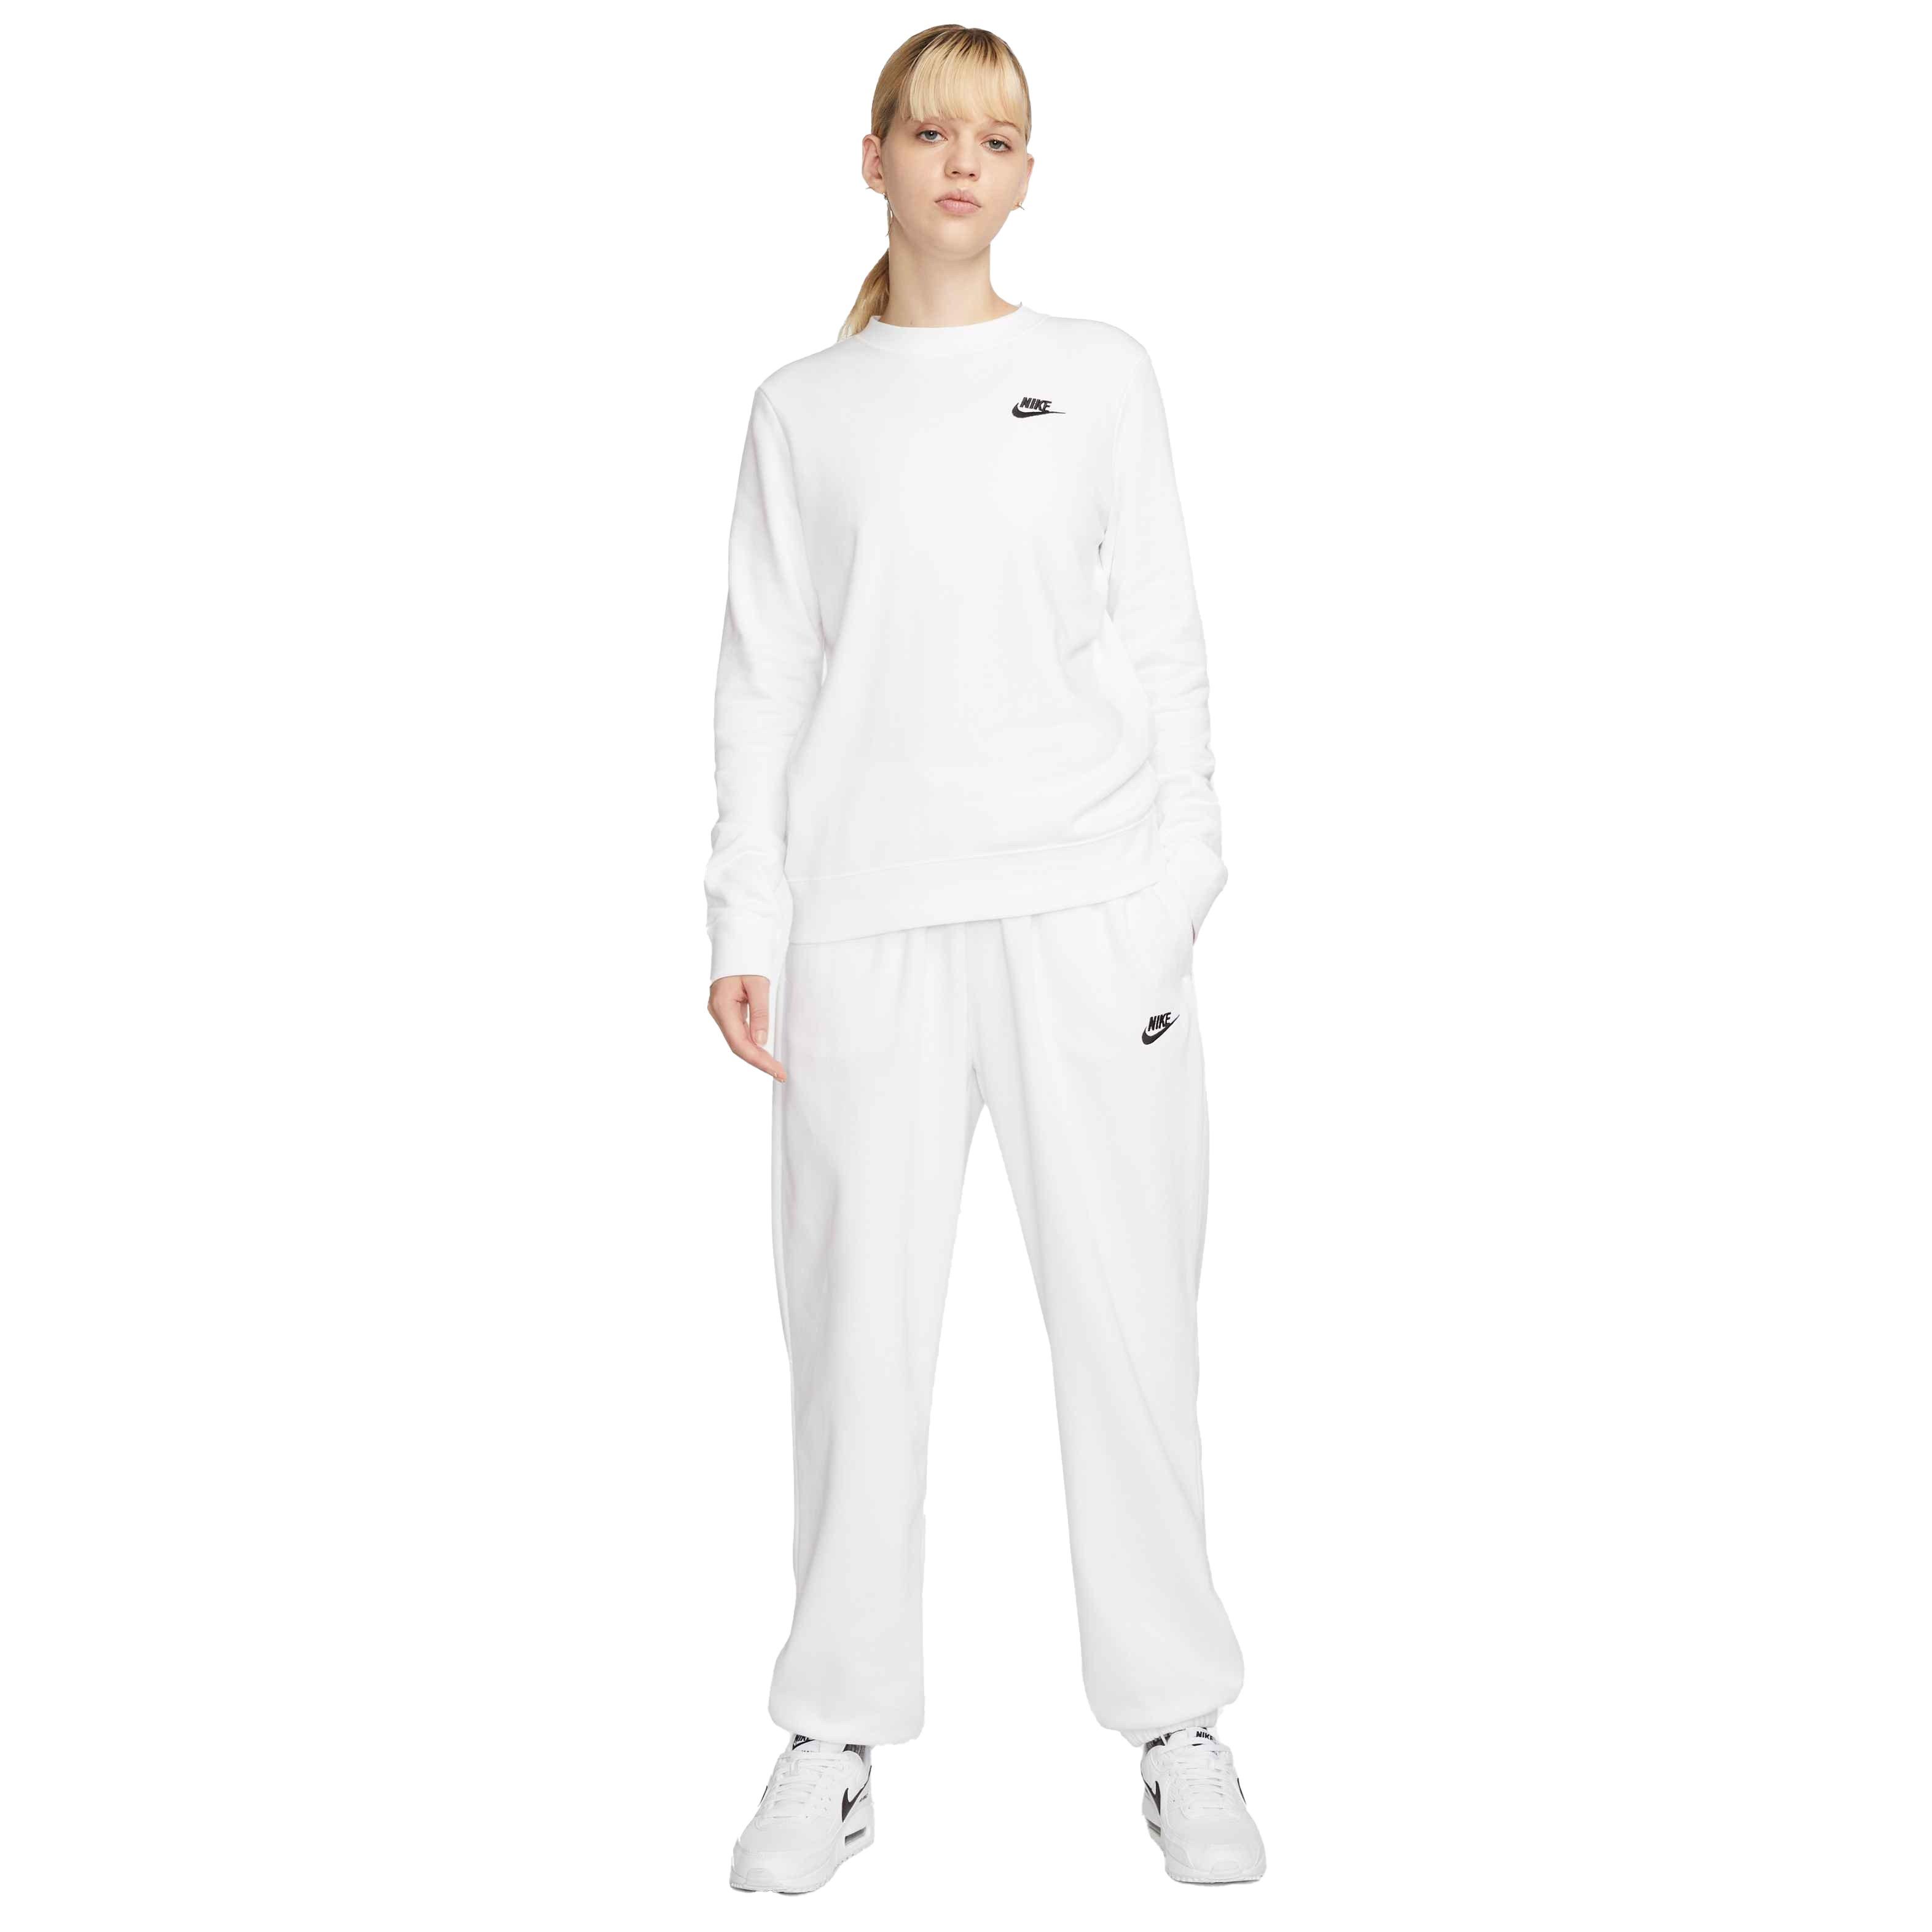 Nike Sportswear Women's Club Fleece Mid-Rise Oversized Sweatpants Dark Grey  Heather / White